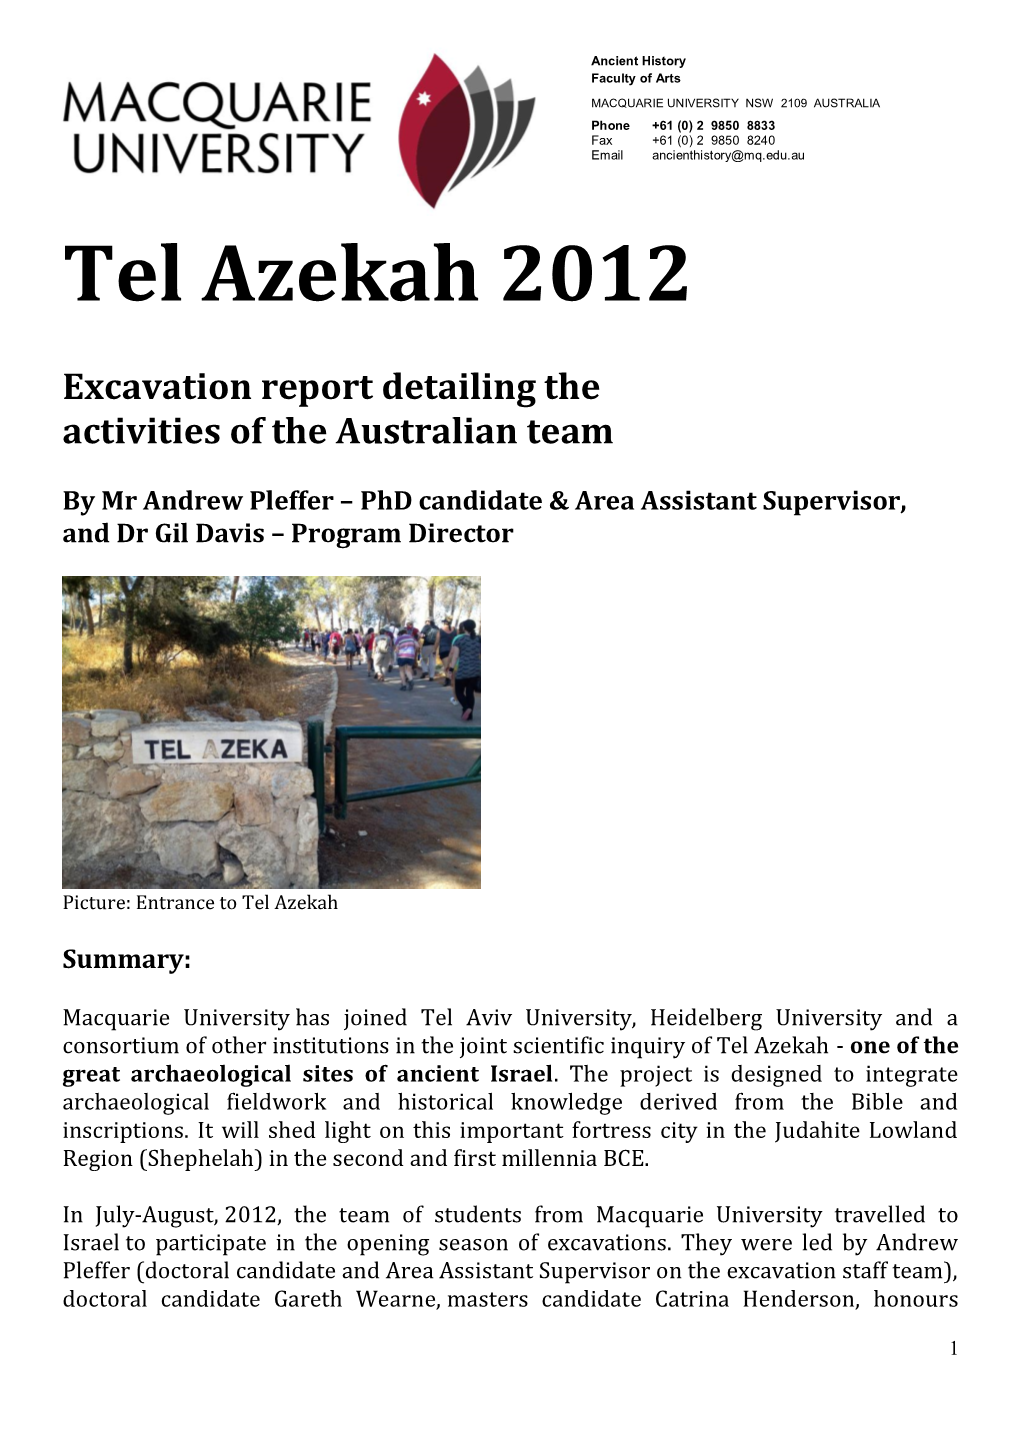 Tel Azekah 2012